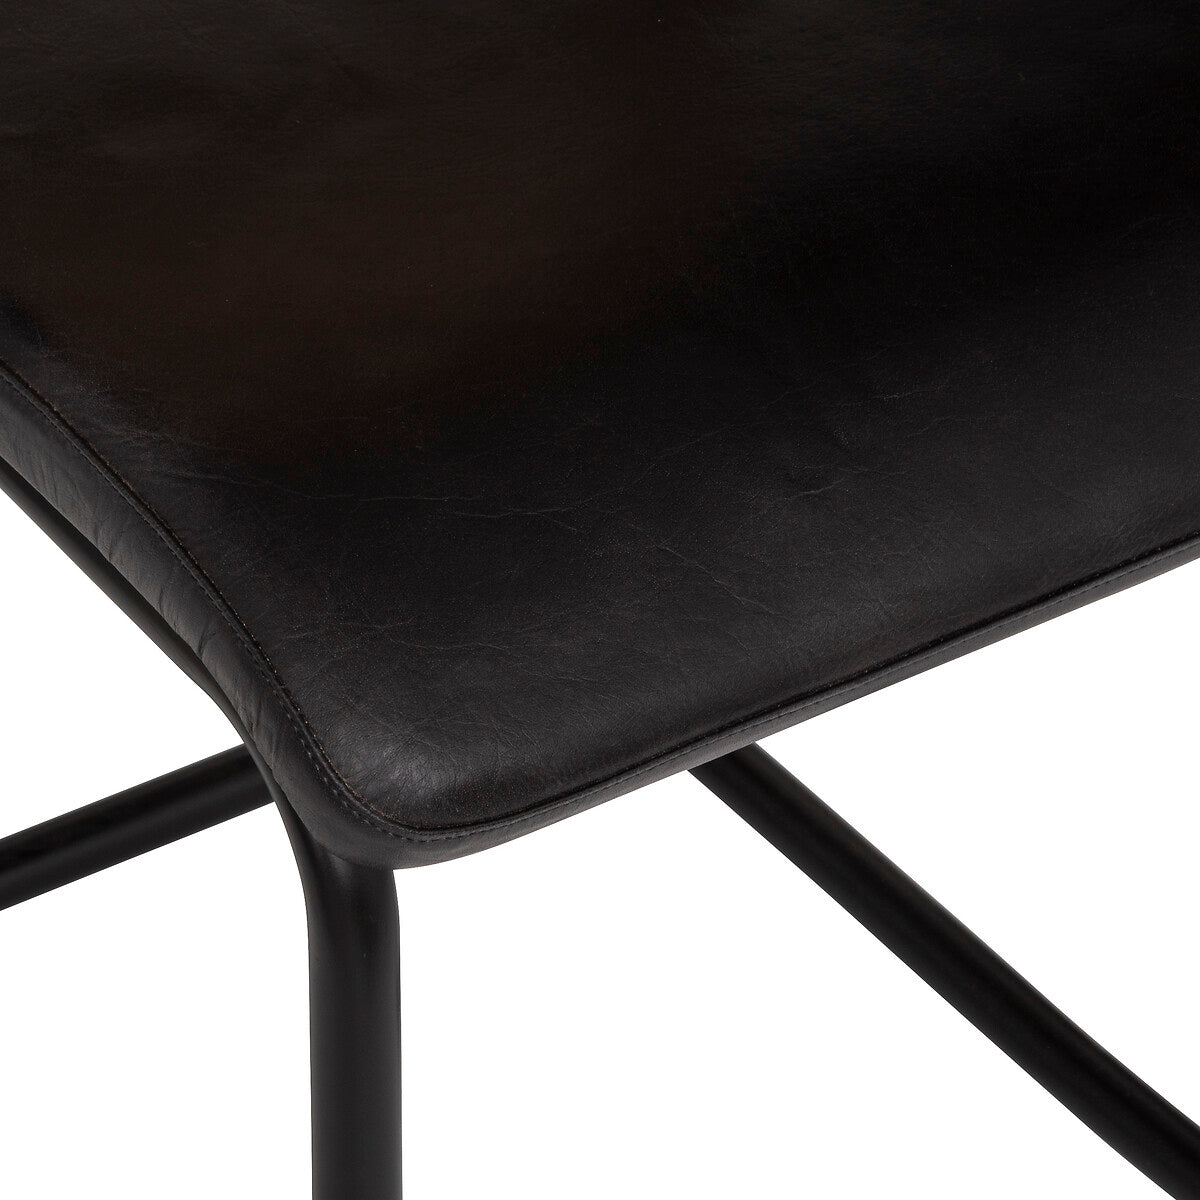 BEAU Deva leather/rattan chair - Set of 2 pieces - L44xD53xH88cm - Black